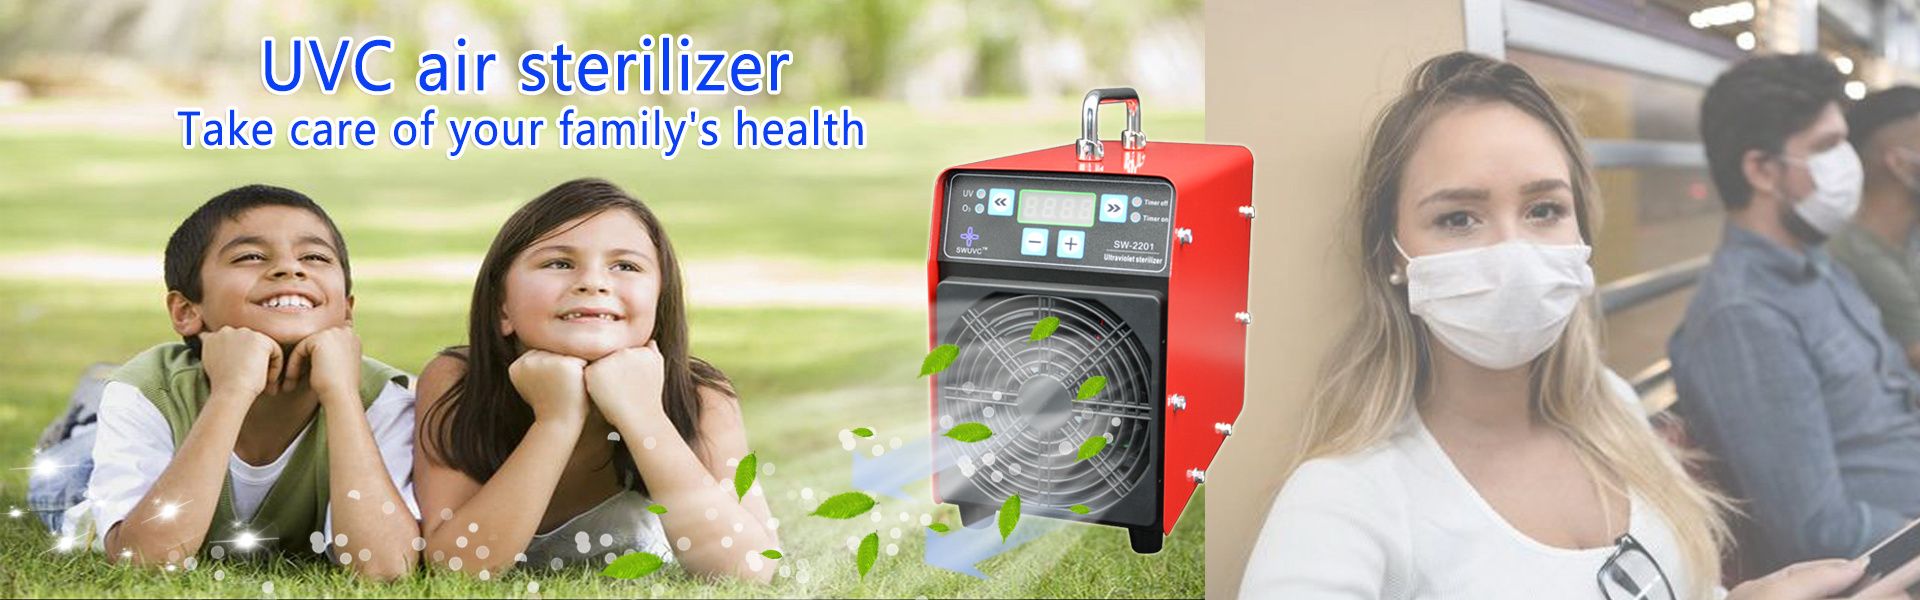 ultrafialová sterilizace, uvc čistička vzduchu, novinky covid19,Dongguan 3d Health Technology Co., LTD